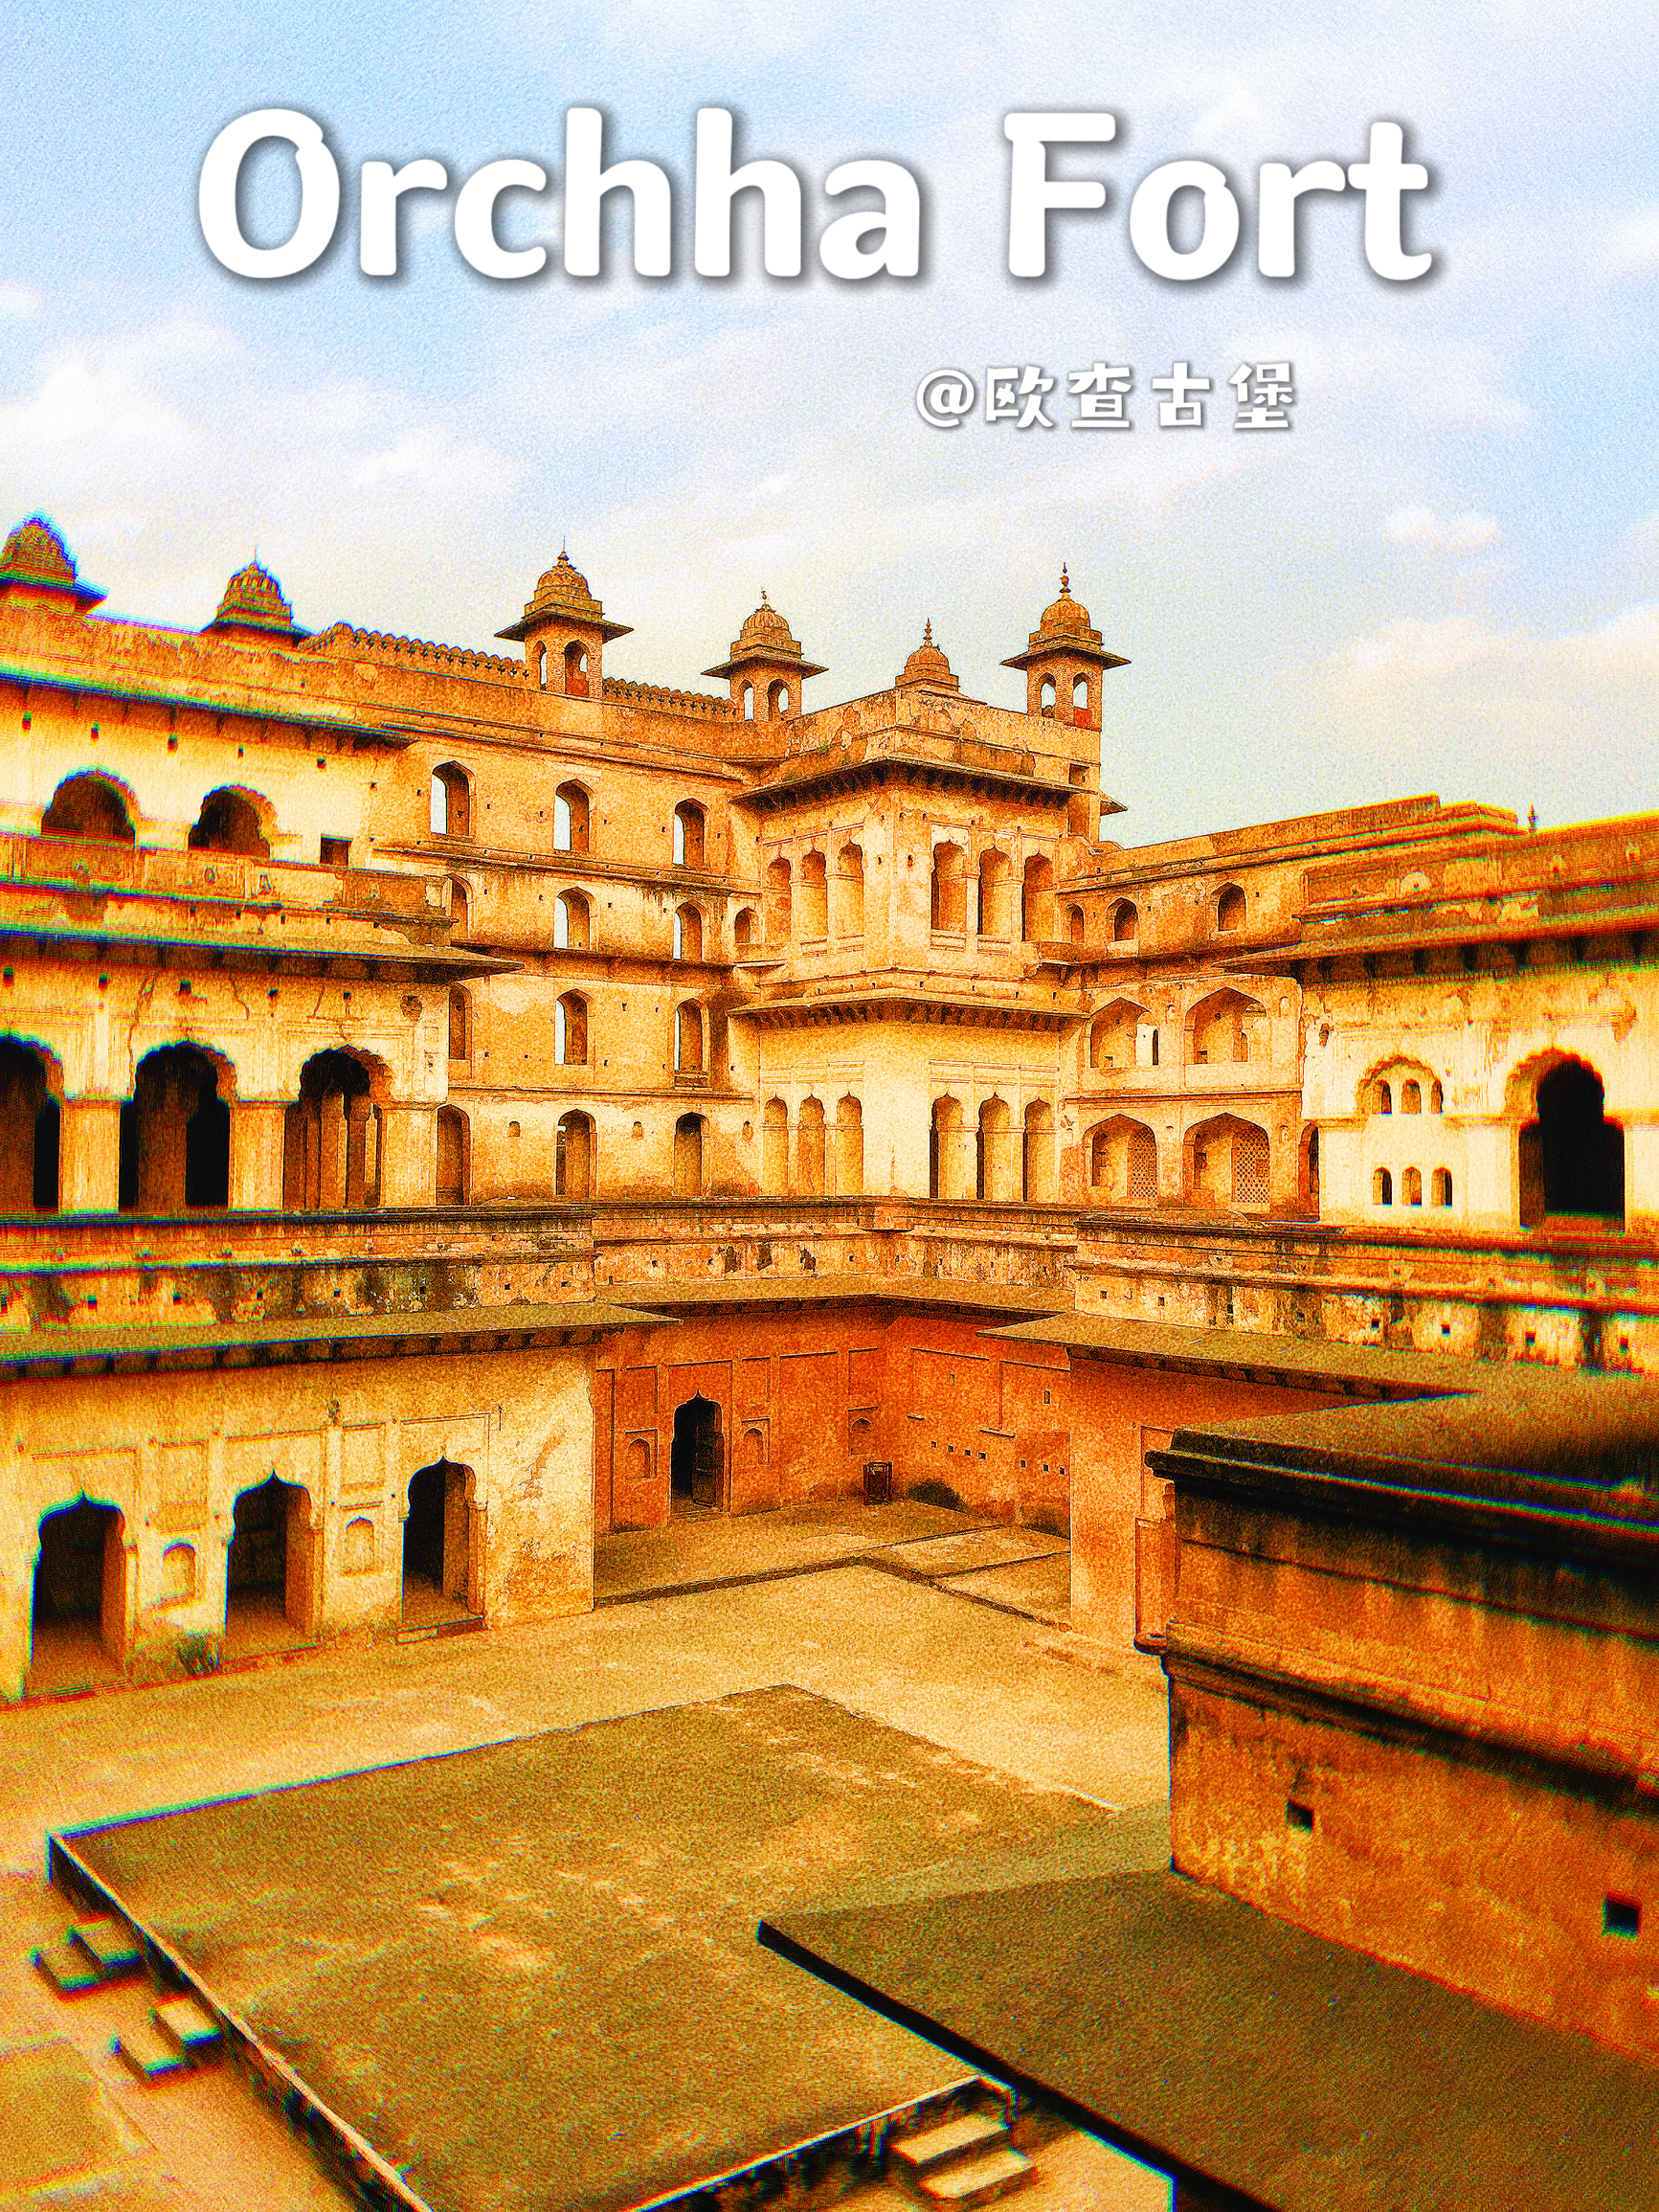 印度旅行必看｜隐匿幽谧的欧查古堡，一坐避世古堡